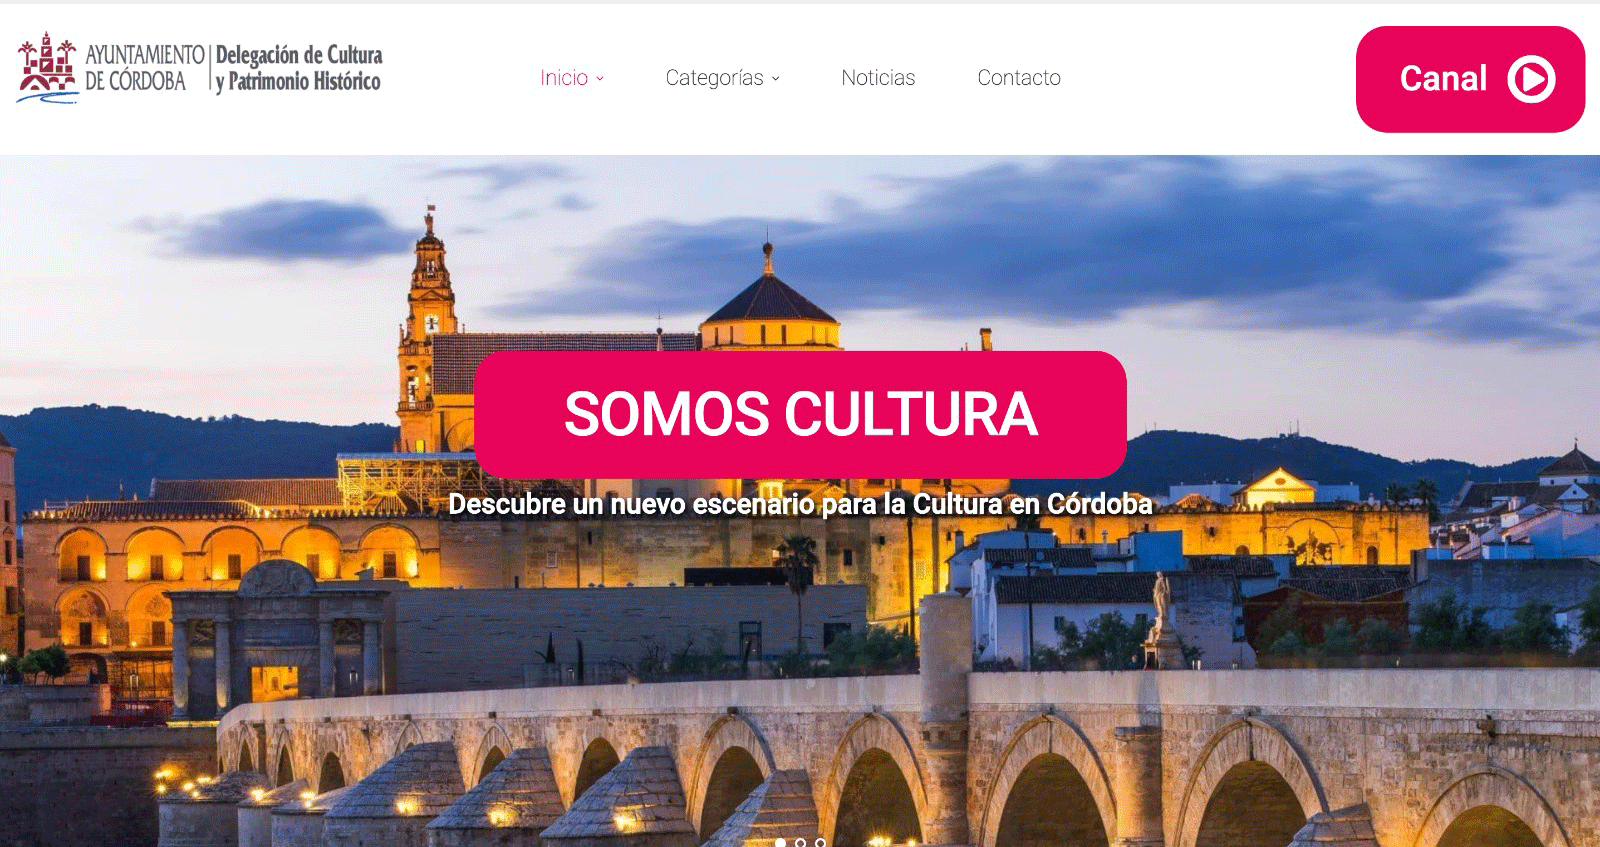 Transmision y Difusión de contenidos culturales de Córdoba en La Plataforma de la Cultura